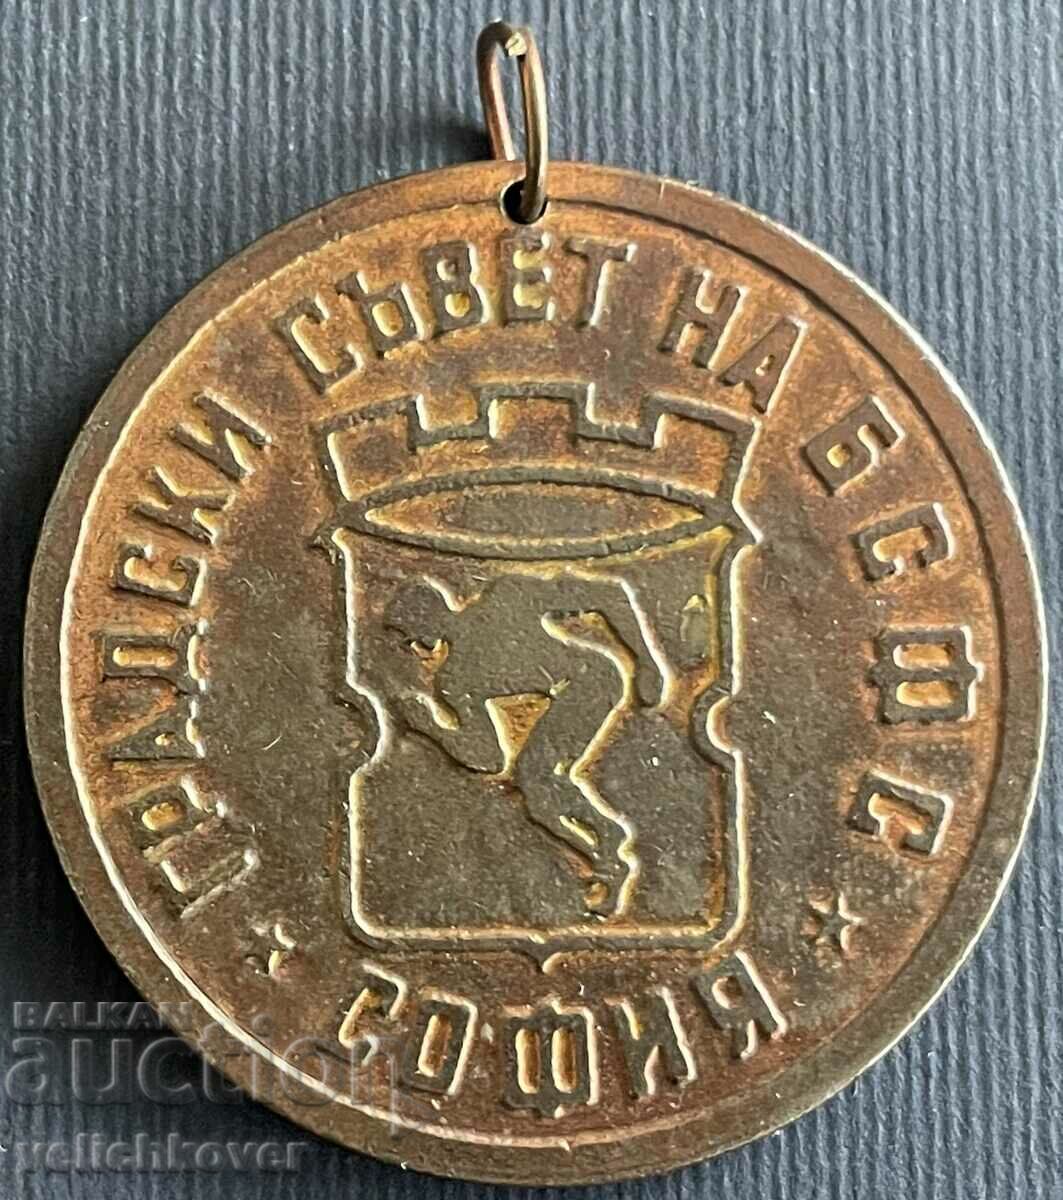 34399 България медал Градски съвет на БСФС София